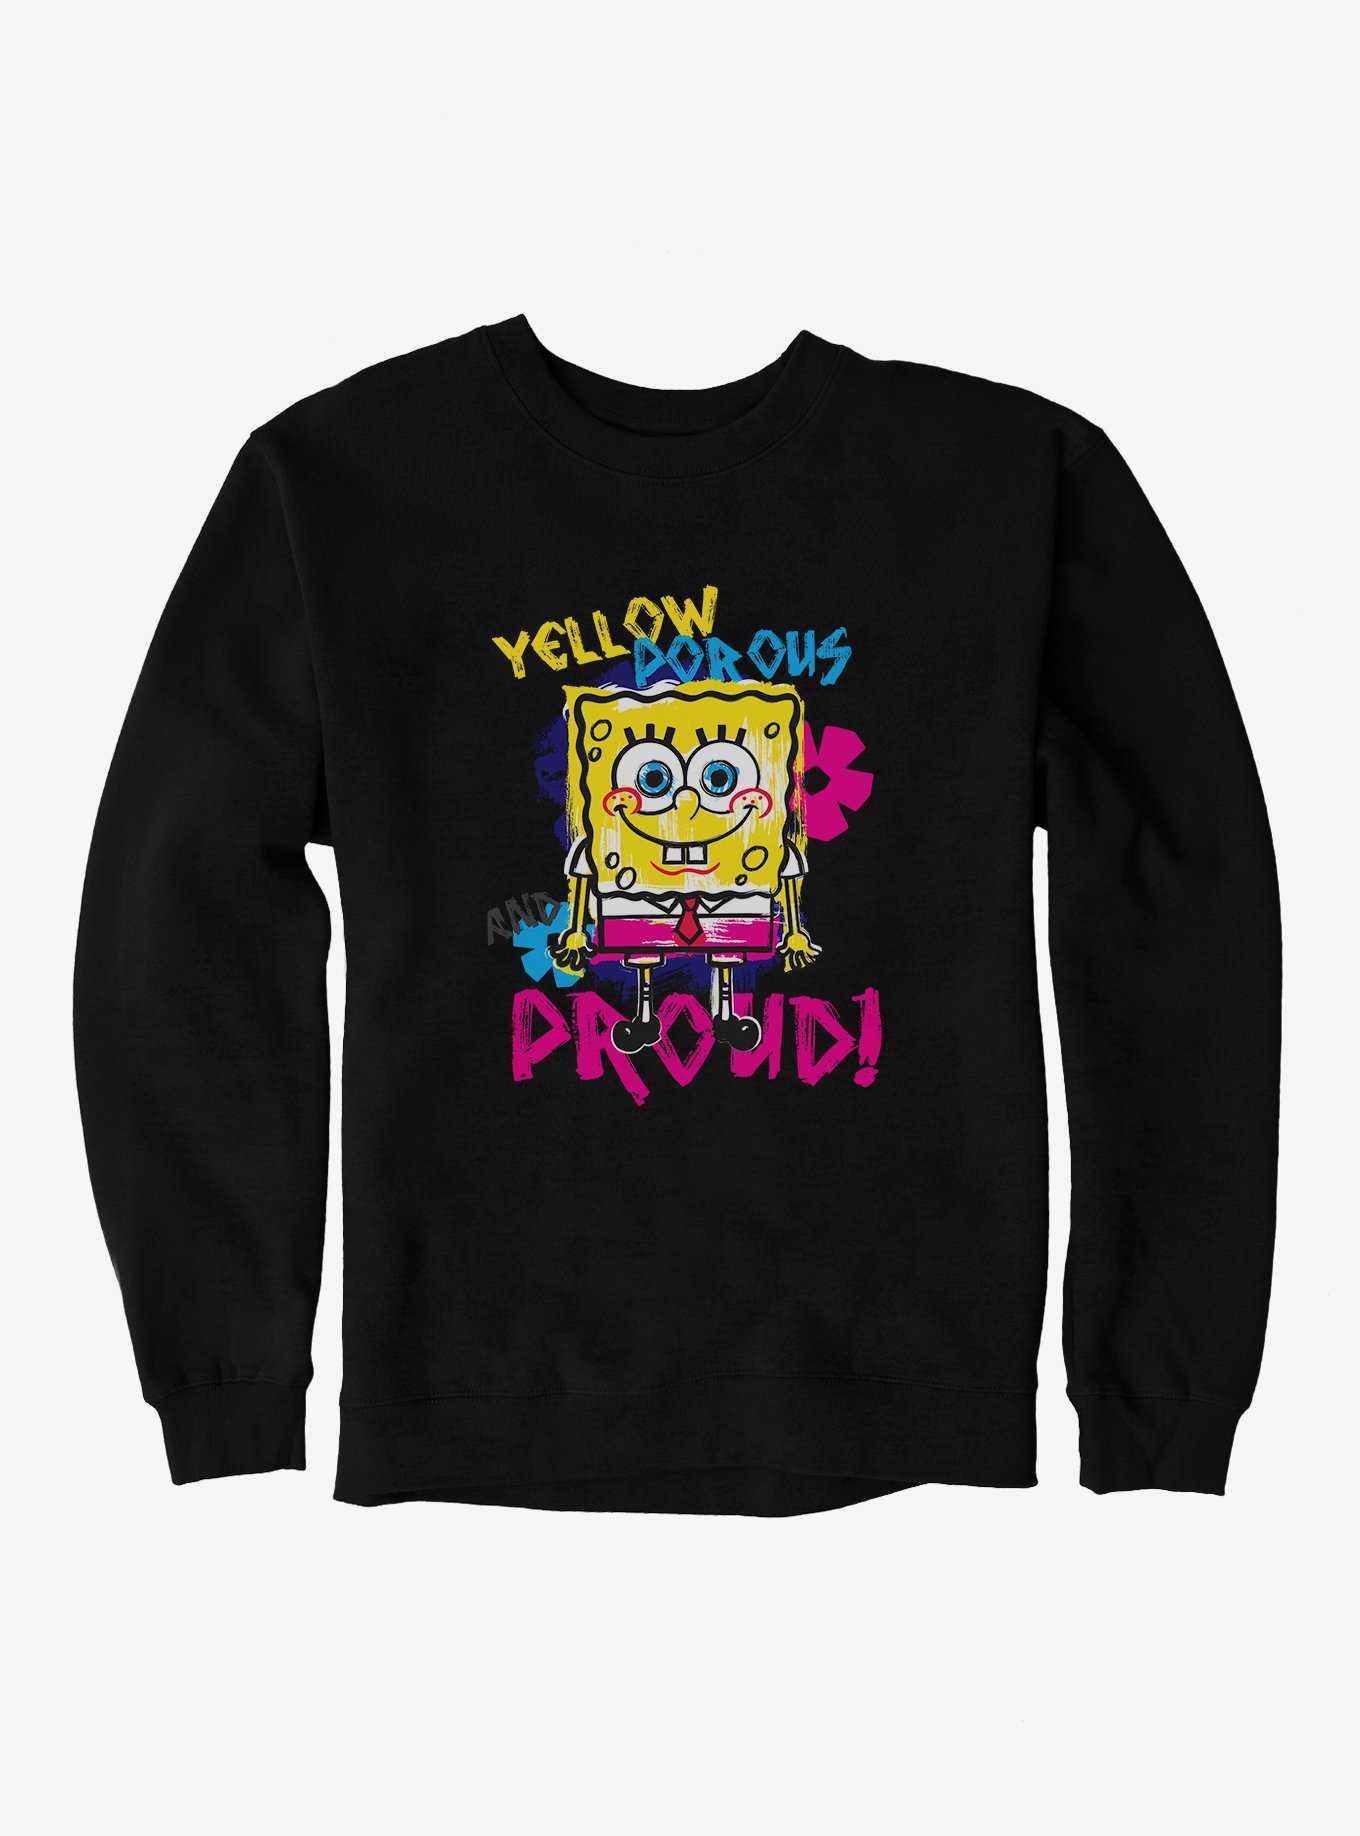 SpongeBob SquarePants Yellow, Porous  And Proud Sweatshirt, , hi-res